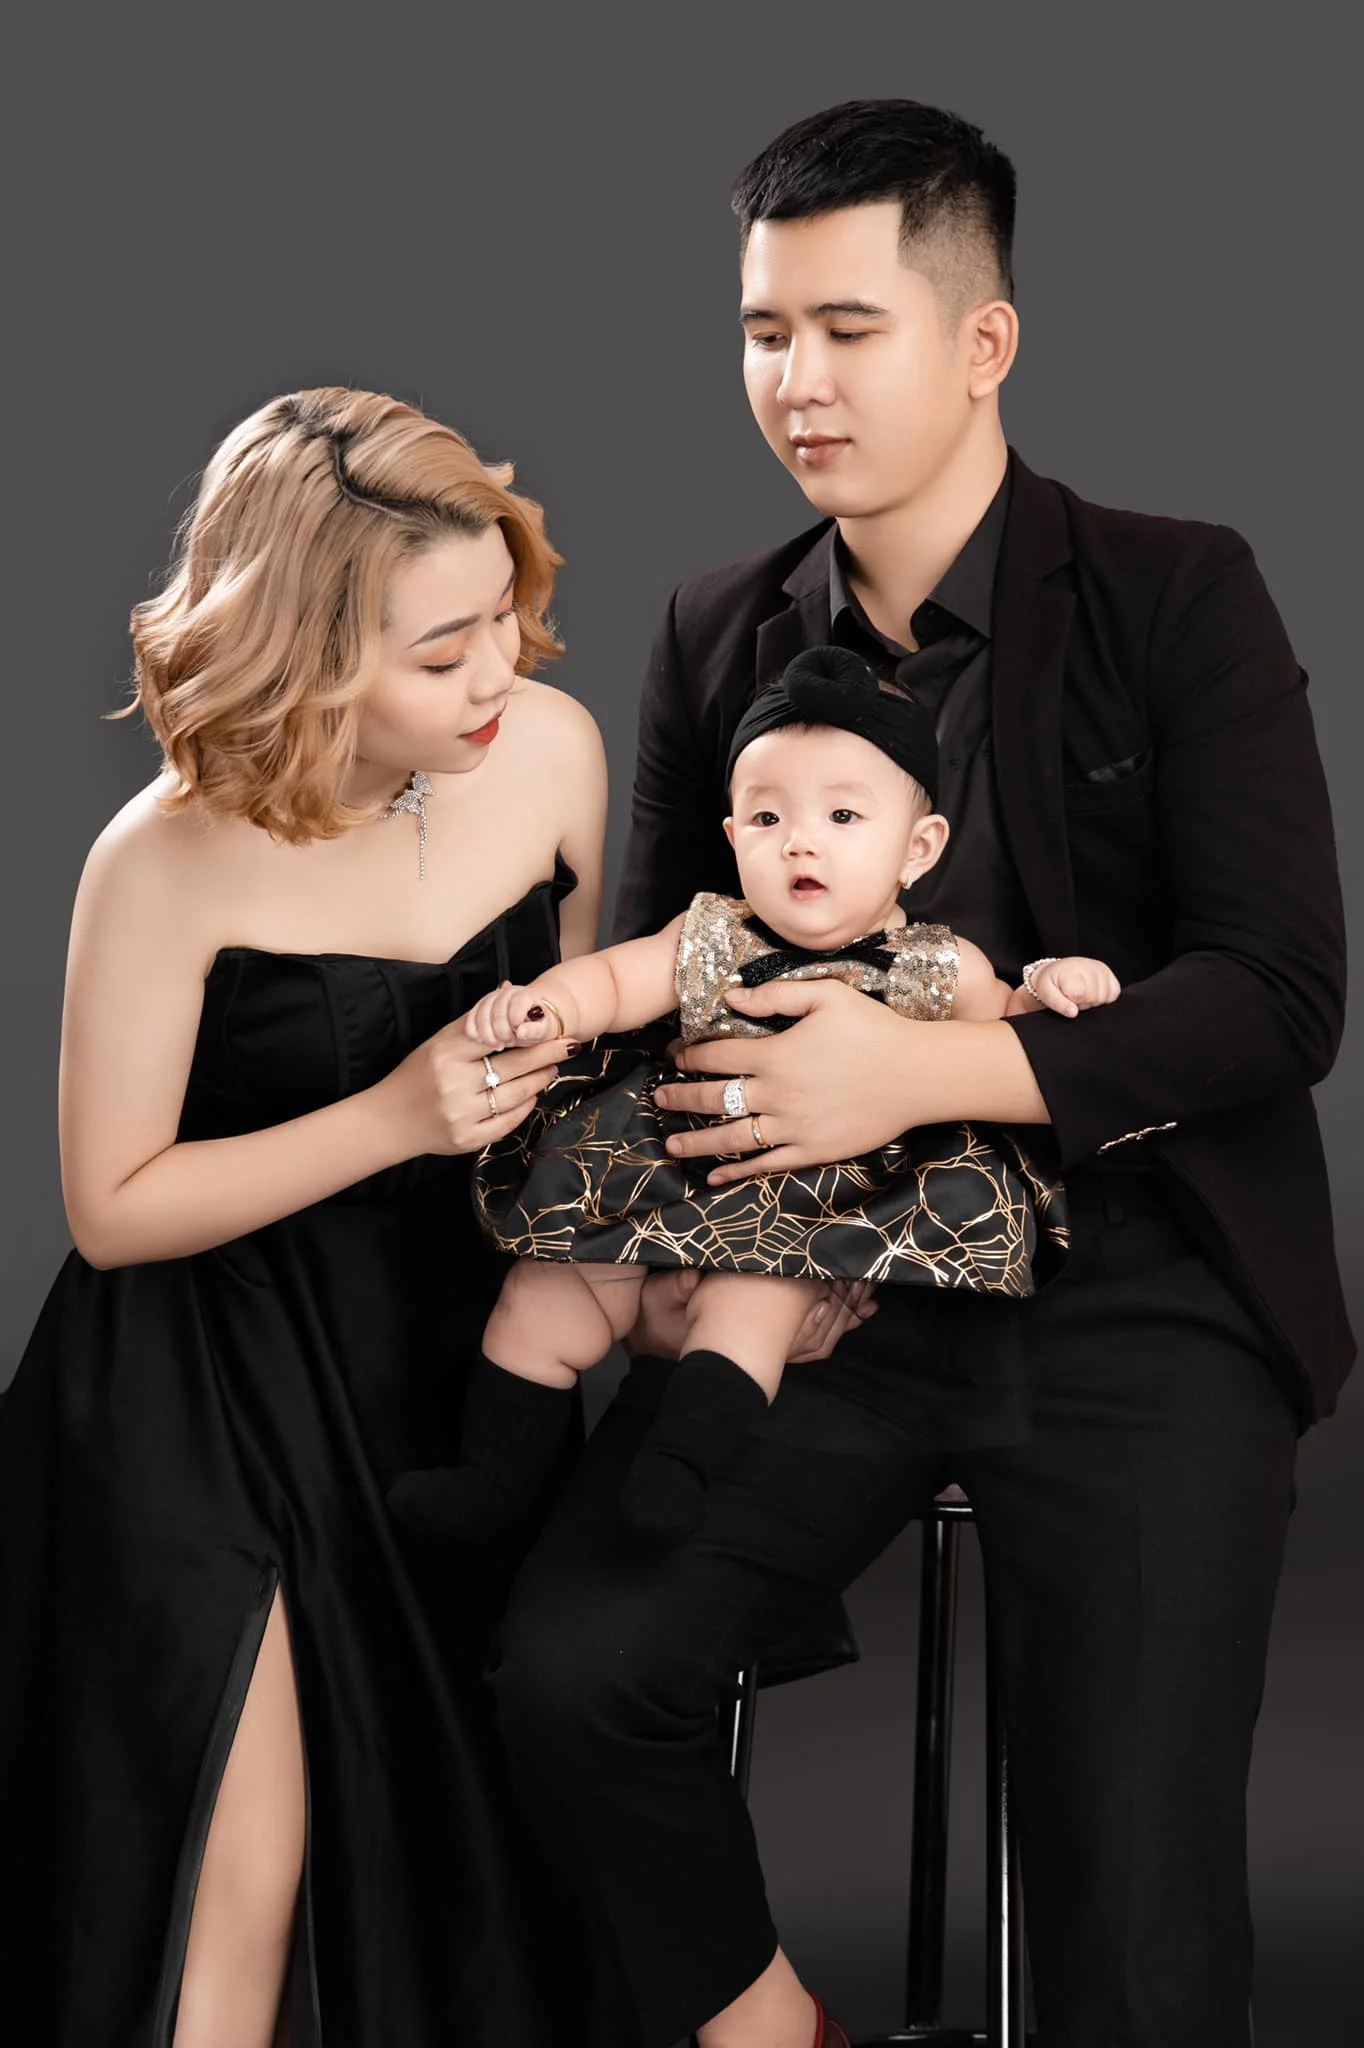 Anh gia dinh 1 1 - #4 Concept chụp ảnh gia đình trong studio đẹp- HThao Studio